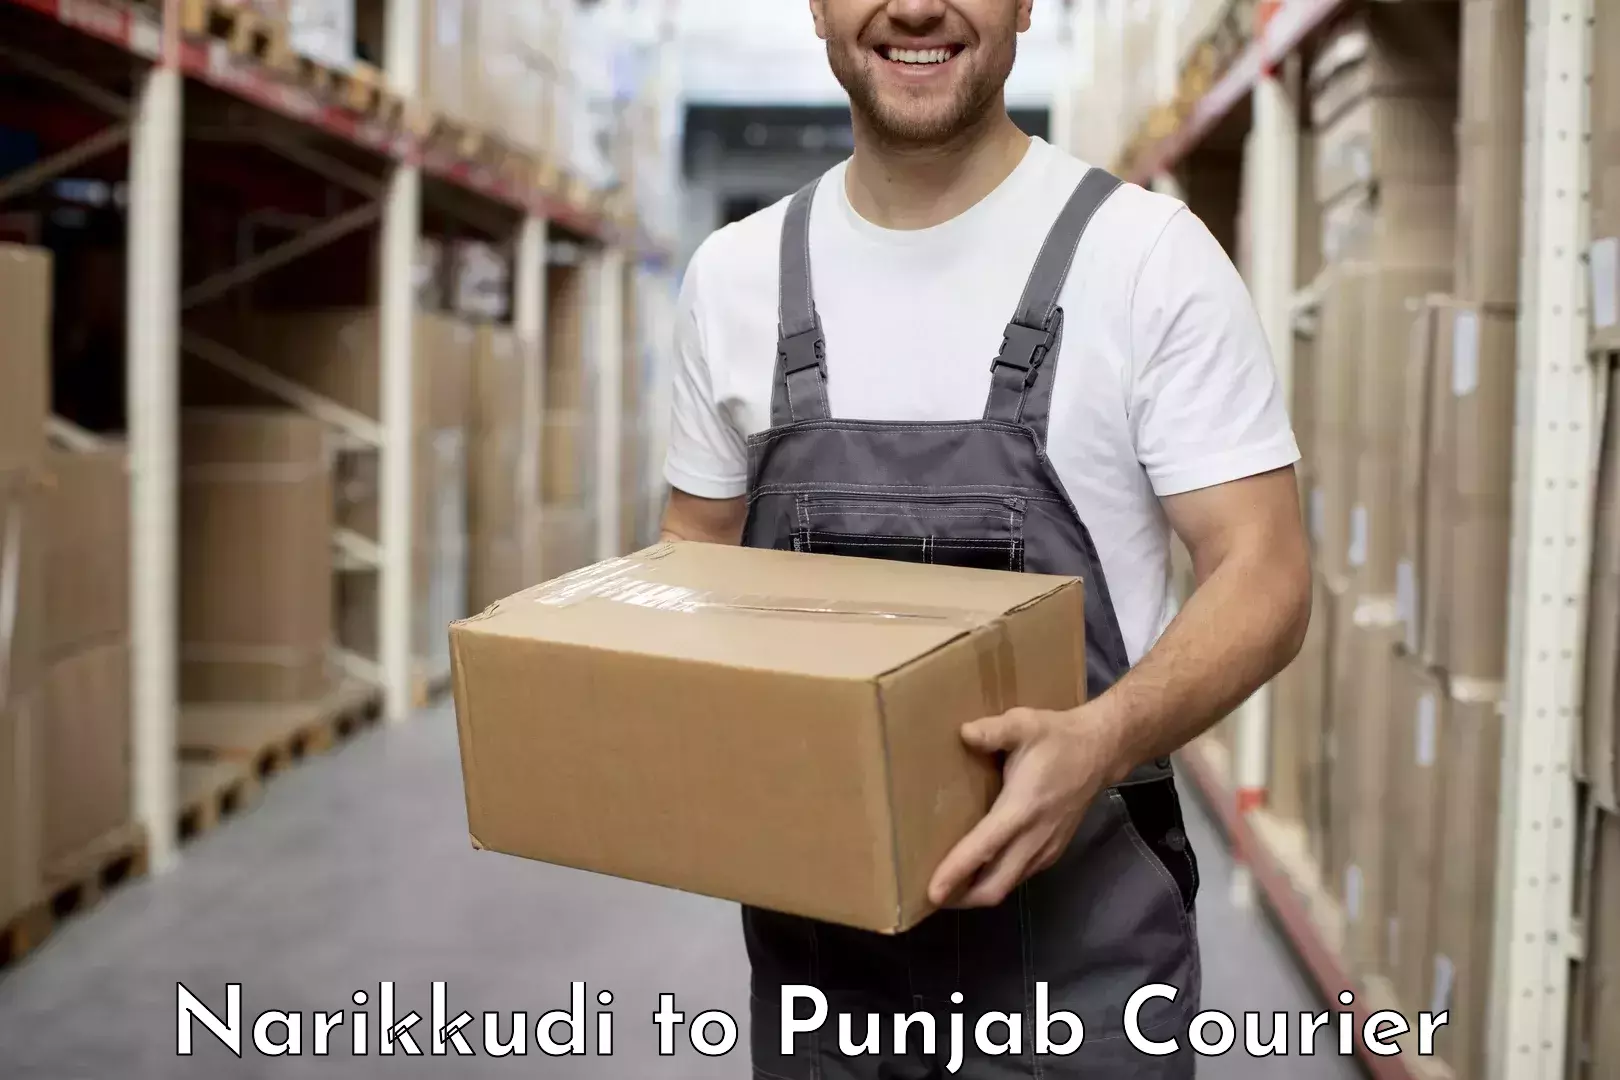 Courier service efficiency Narikkudi to Punjab